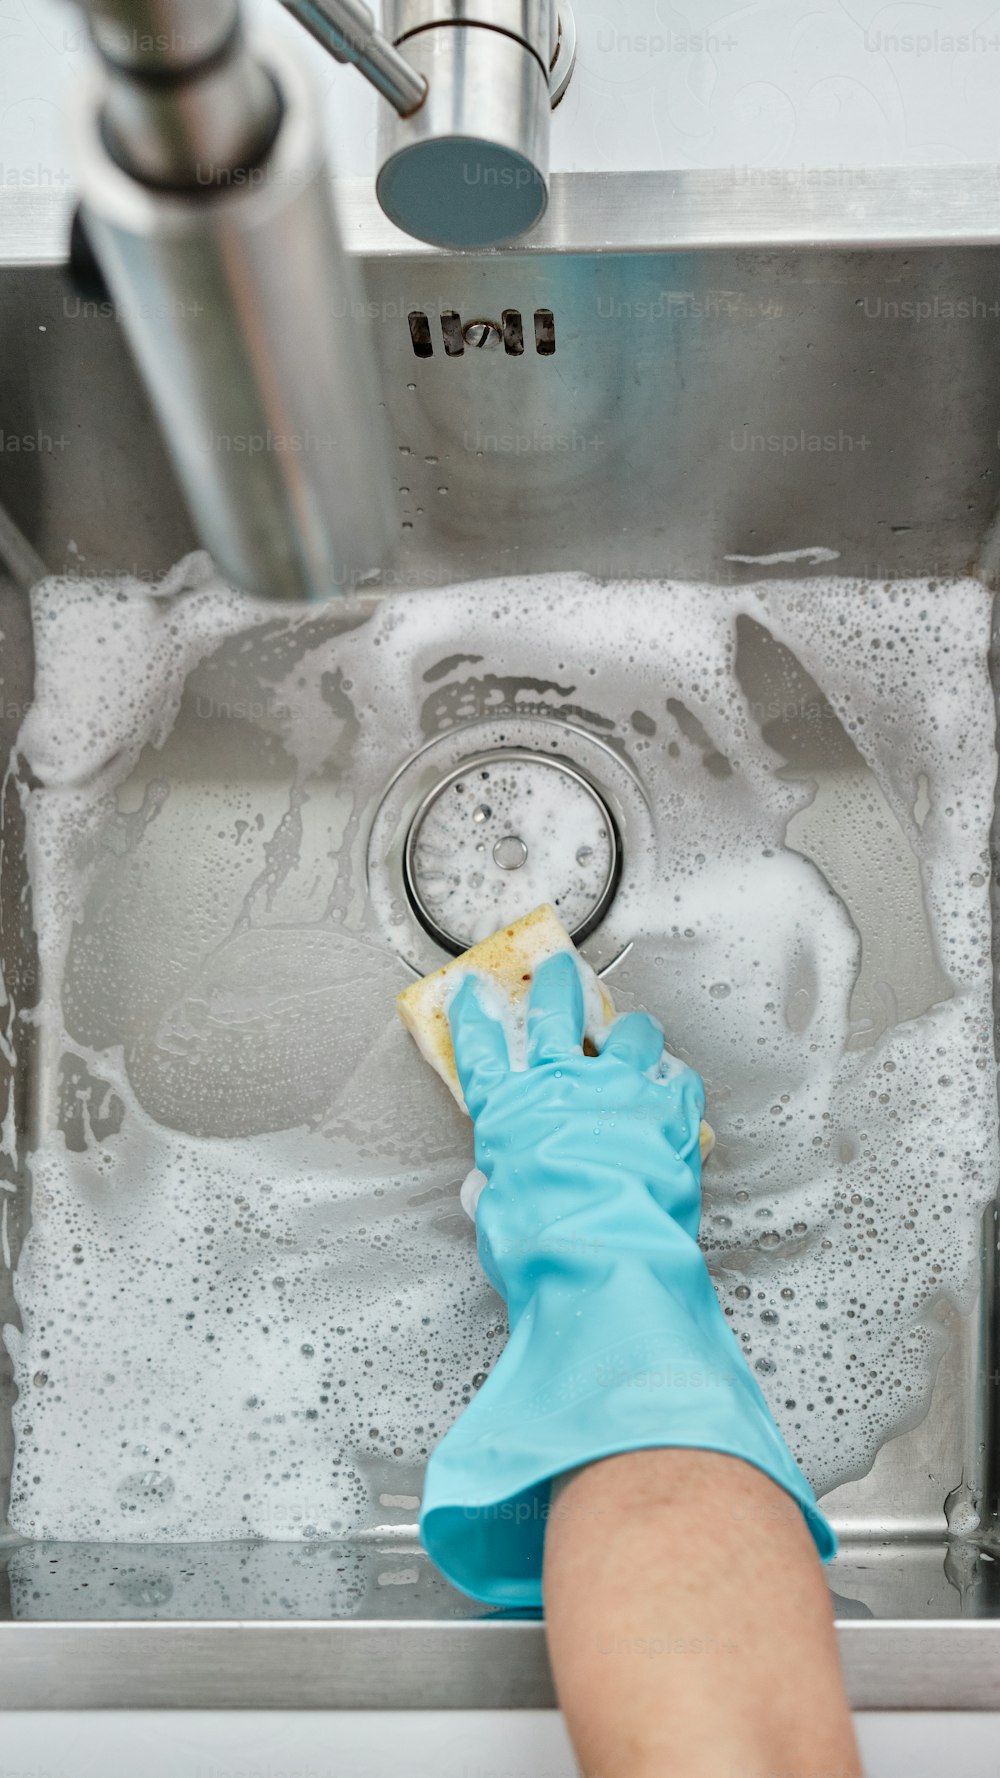 Una persona limpiando un fregadero con un guante azul